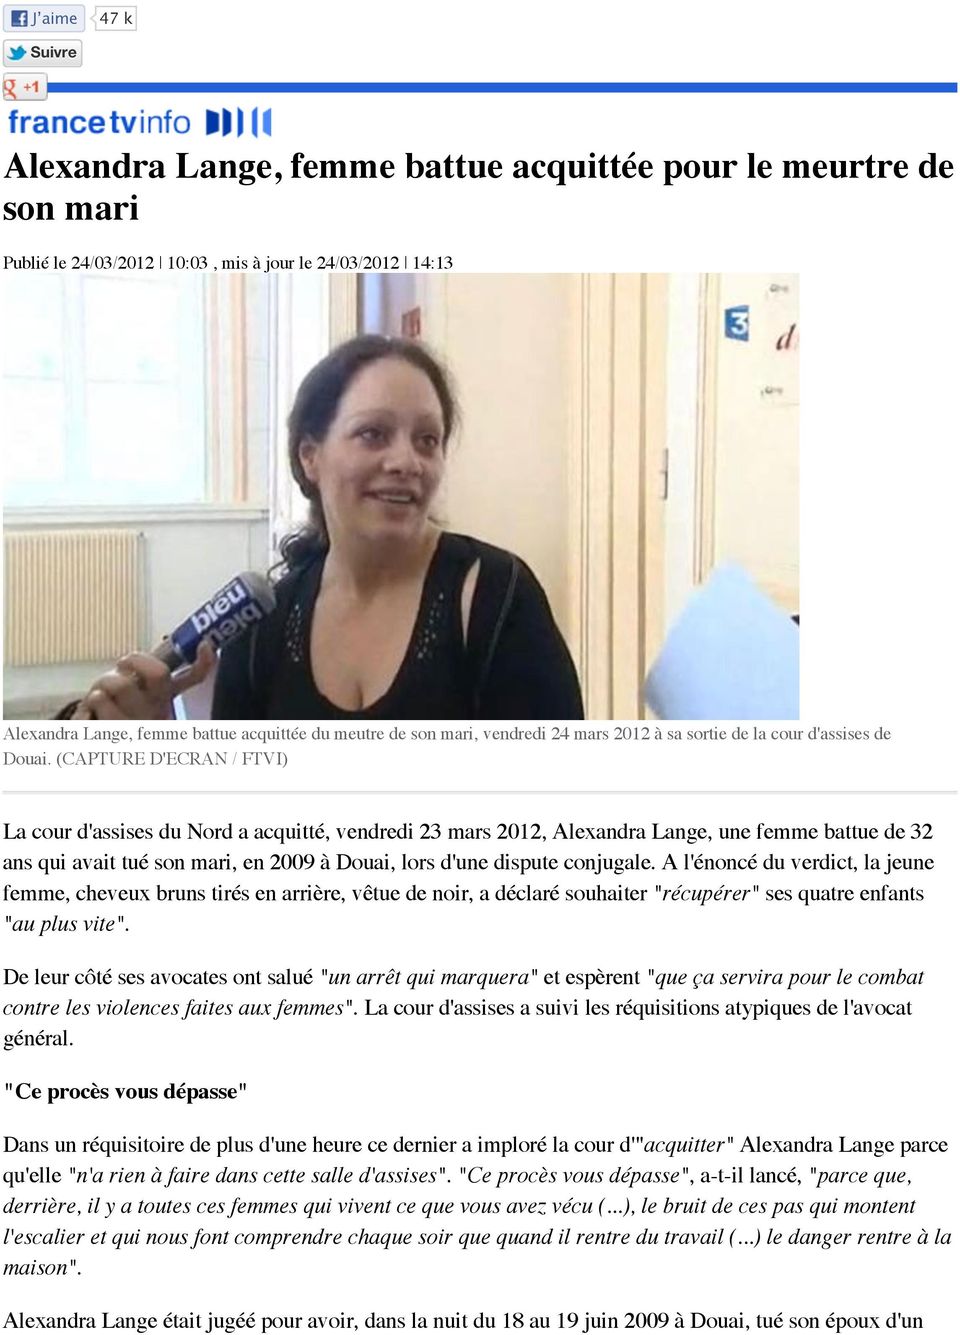 (CAPTURE D'ECRAN / FTVI) La cour d'assises du Nord a acquitté, vendredi 23 mars 2012, Alexandra Lange, une femme battue de 32 ans qui avait tué son mari, en 2009 à Douai, lors d'une dispute conjugale.